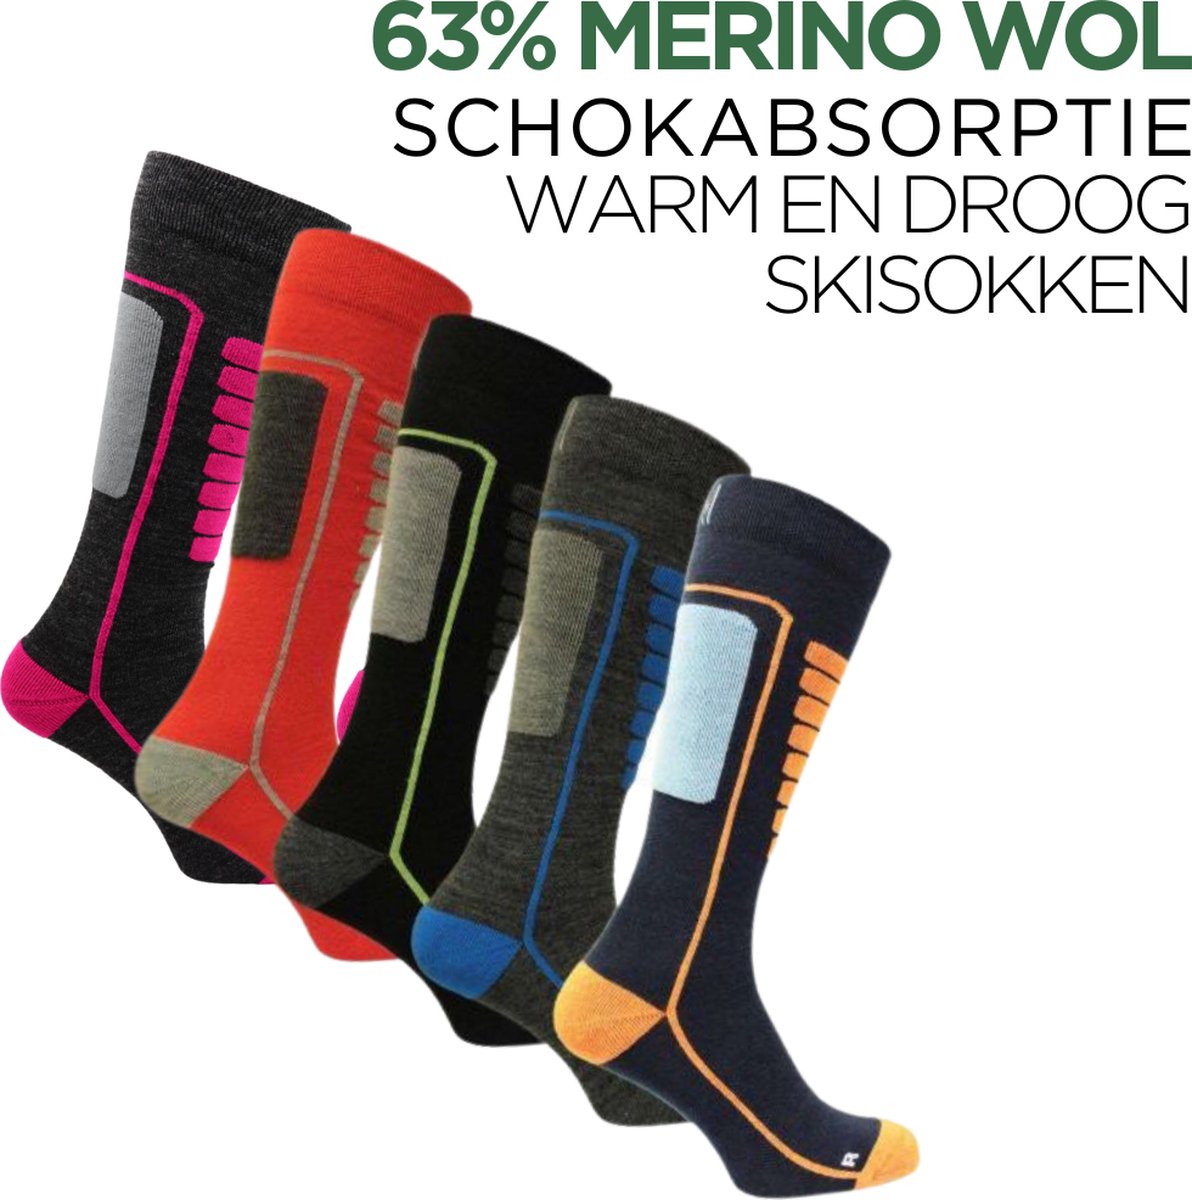 Norfolk - Skisokken - 1 Paar - 63% Merino Wol Schokabsorptie Skisokken - Naadloos - Zacht, Warm en Droog - Smoked - Maat 39-42 - Courchevel